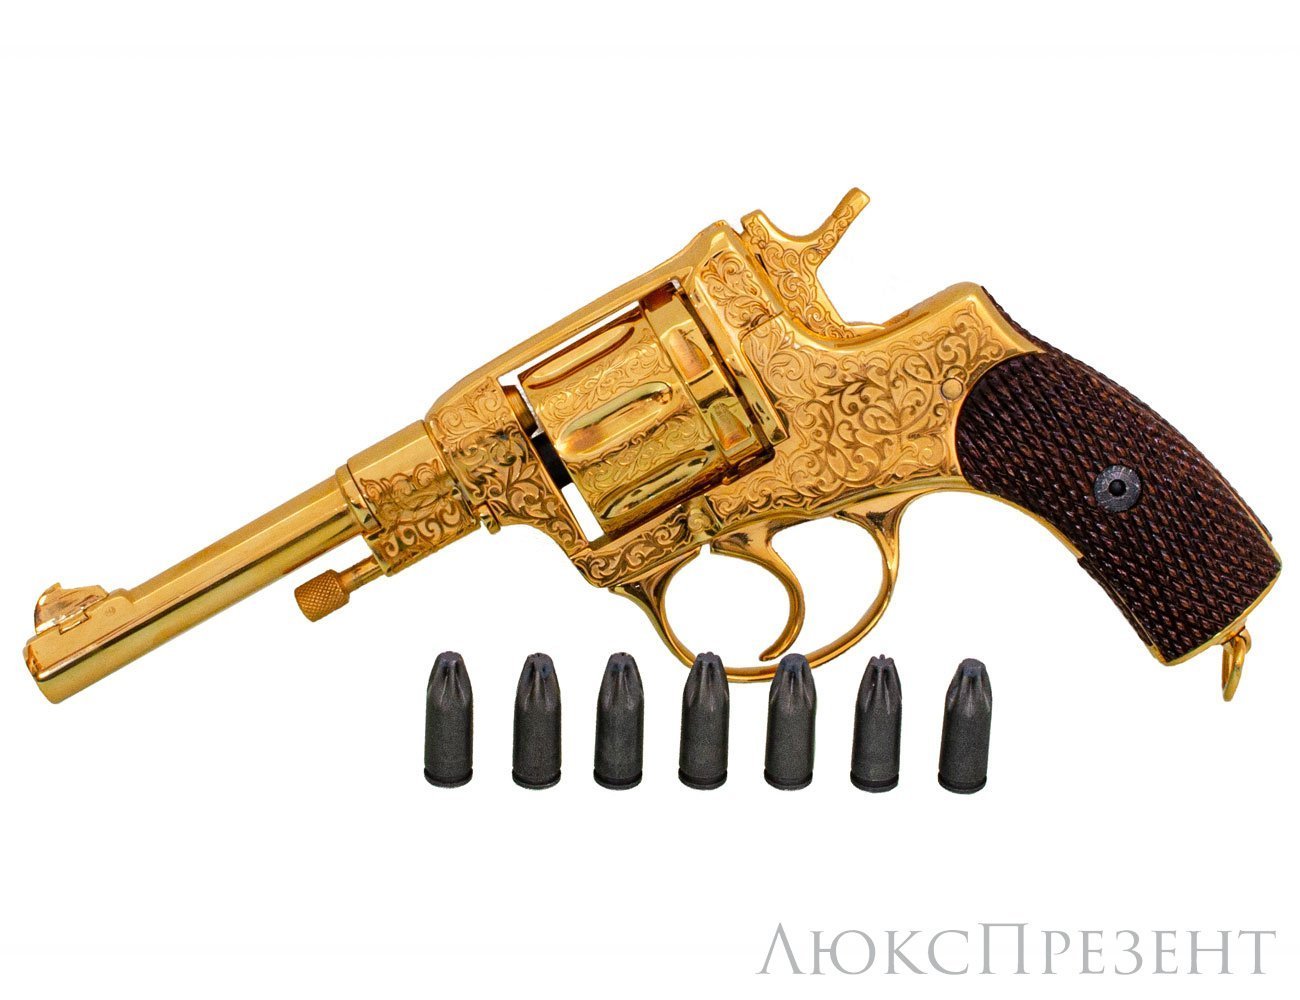 Охолощенный револьвер "Златоуст"